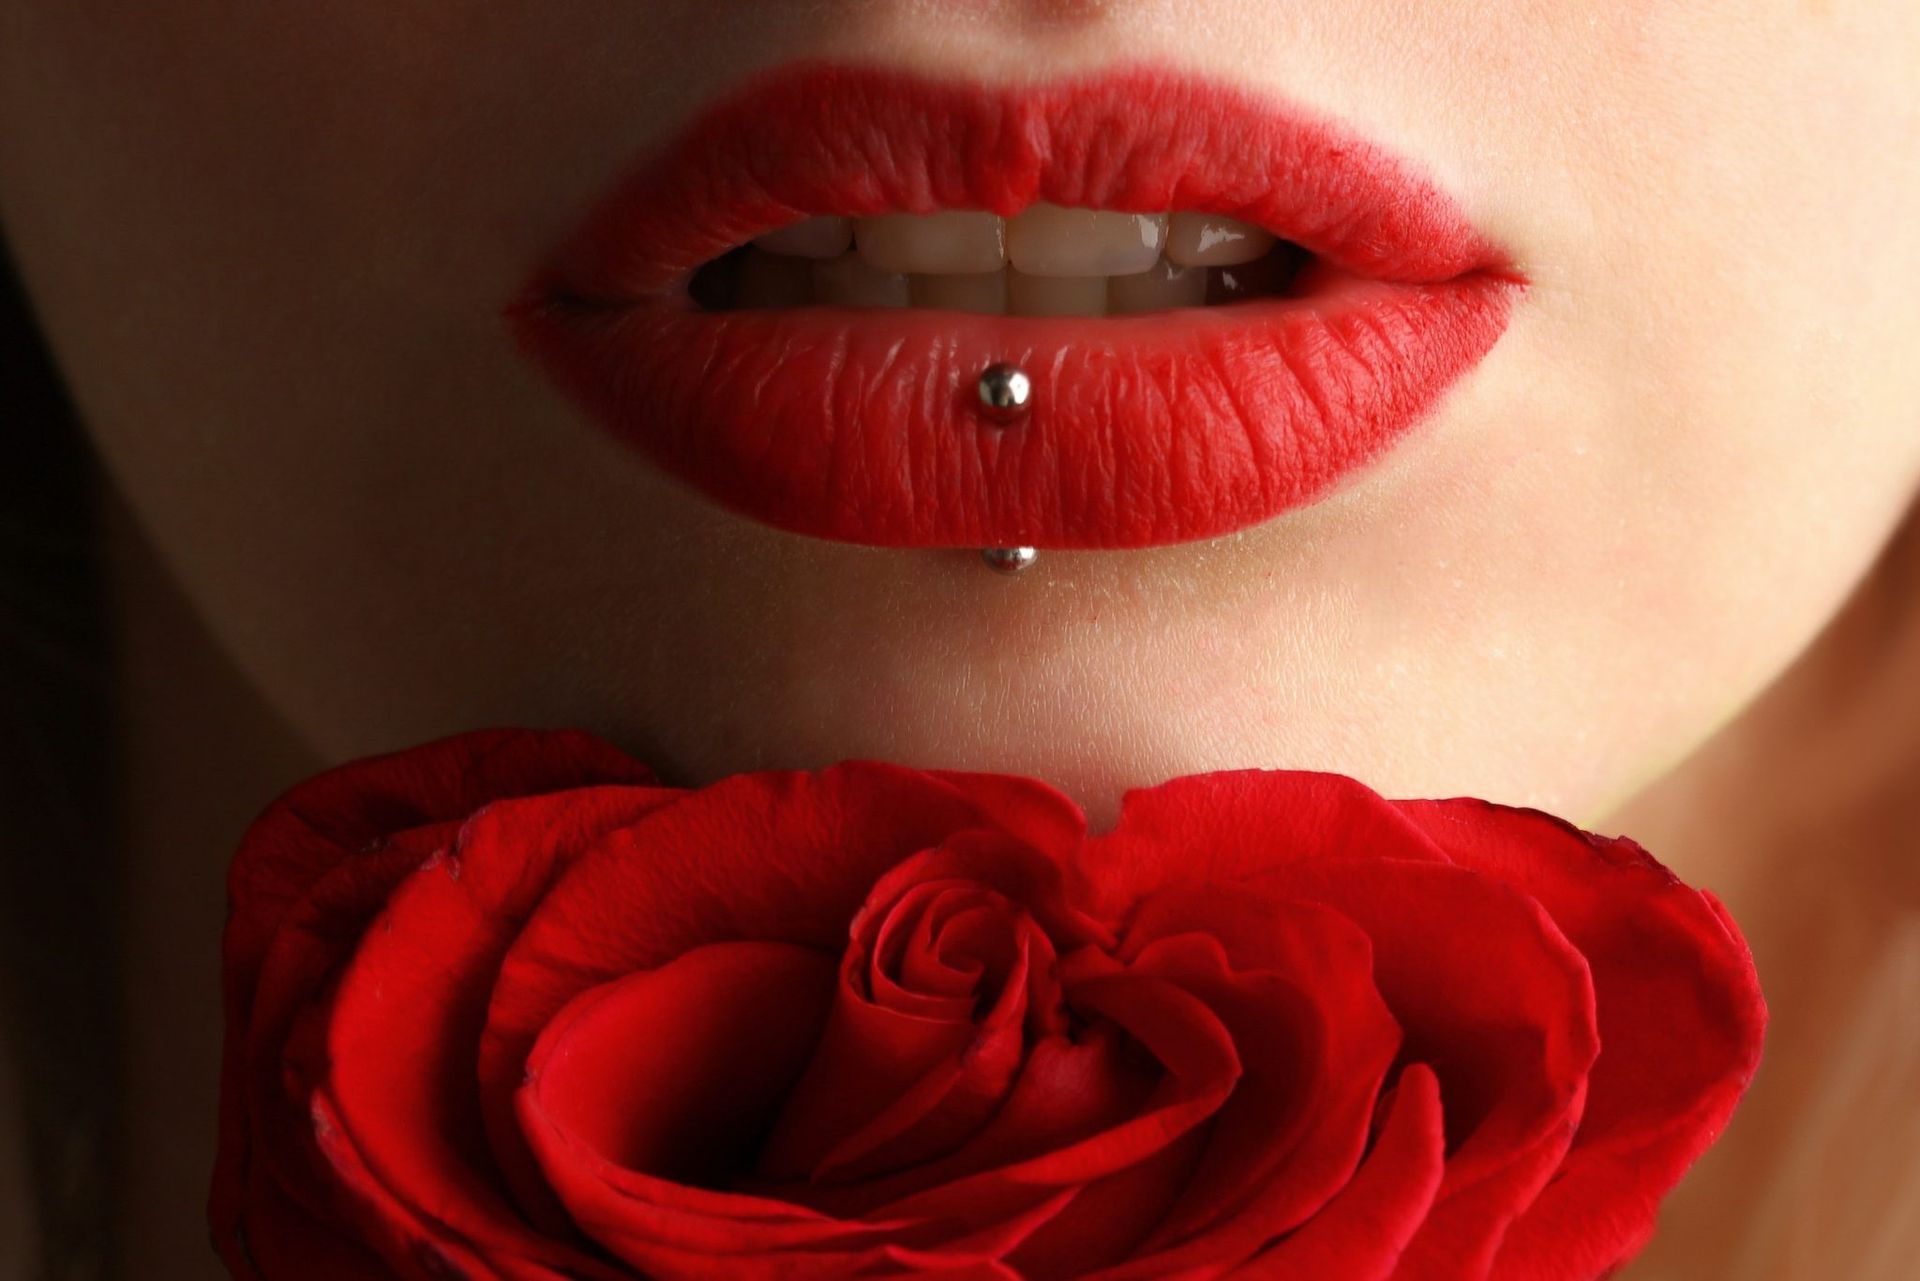 roseville piercings near me